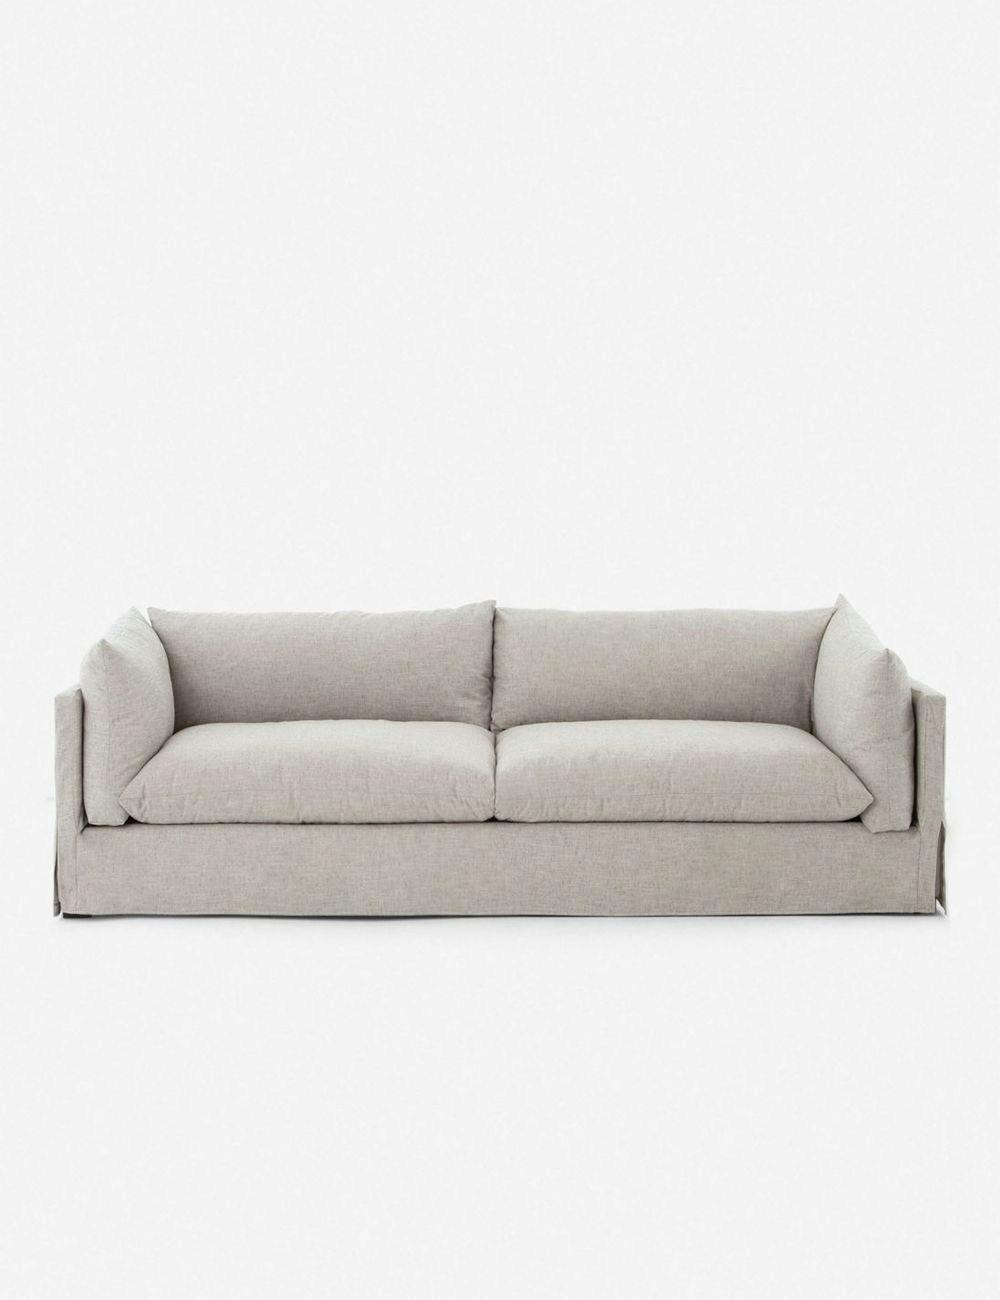 Arlen 90" Light Gray Slipcover Sofa